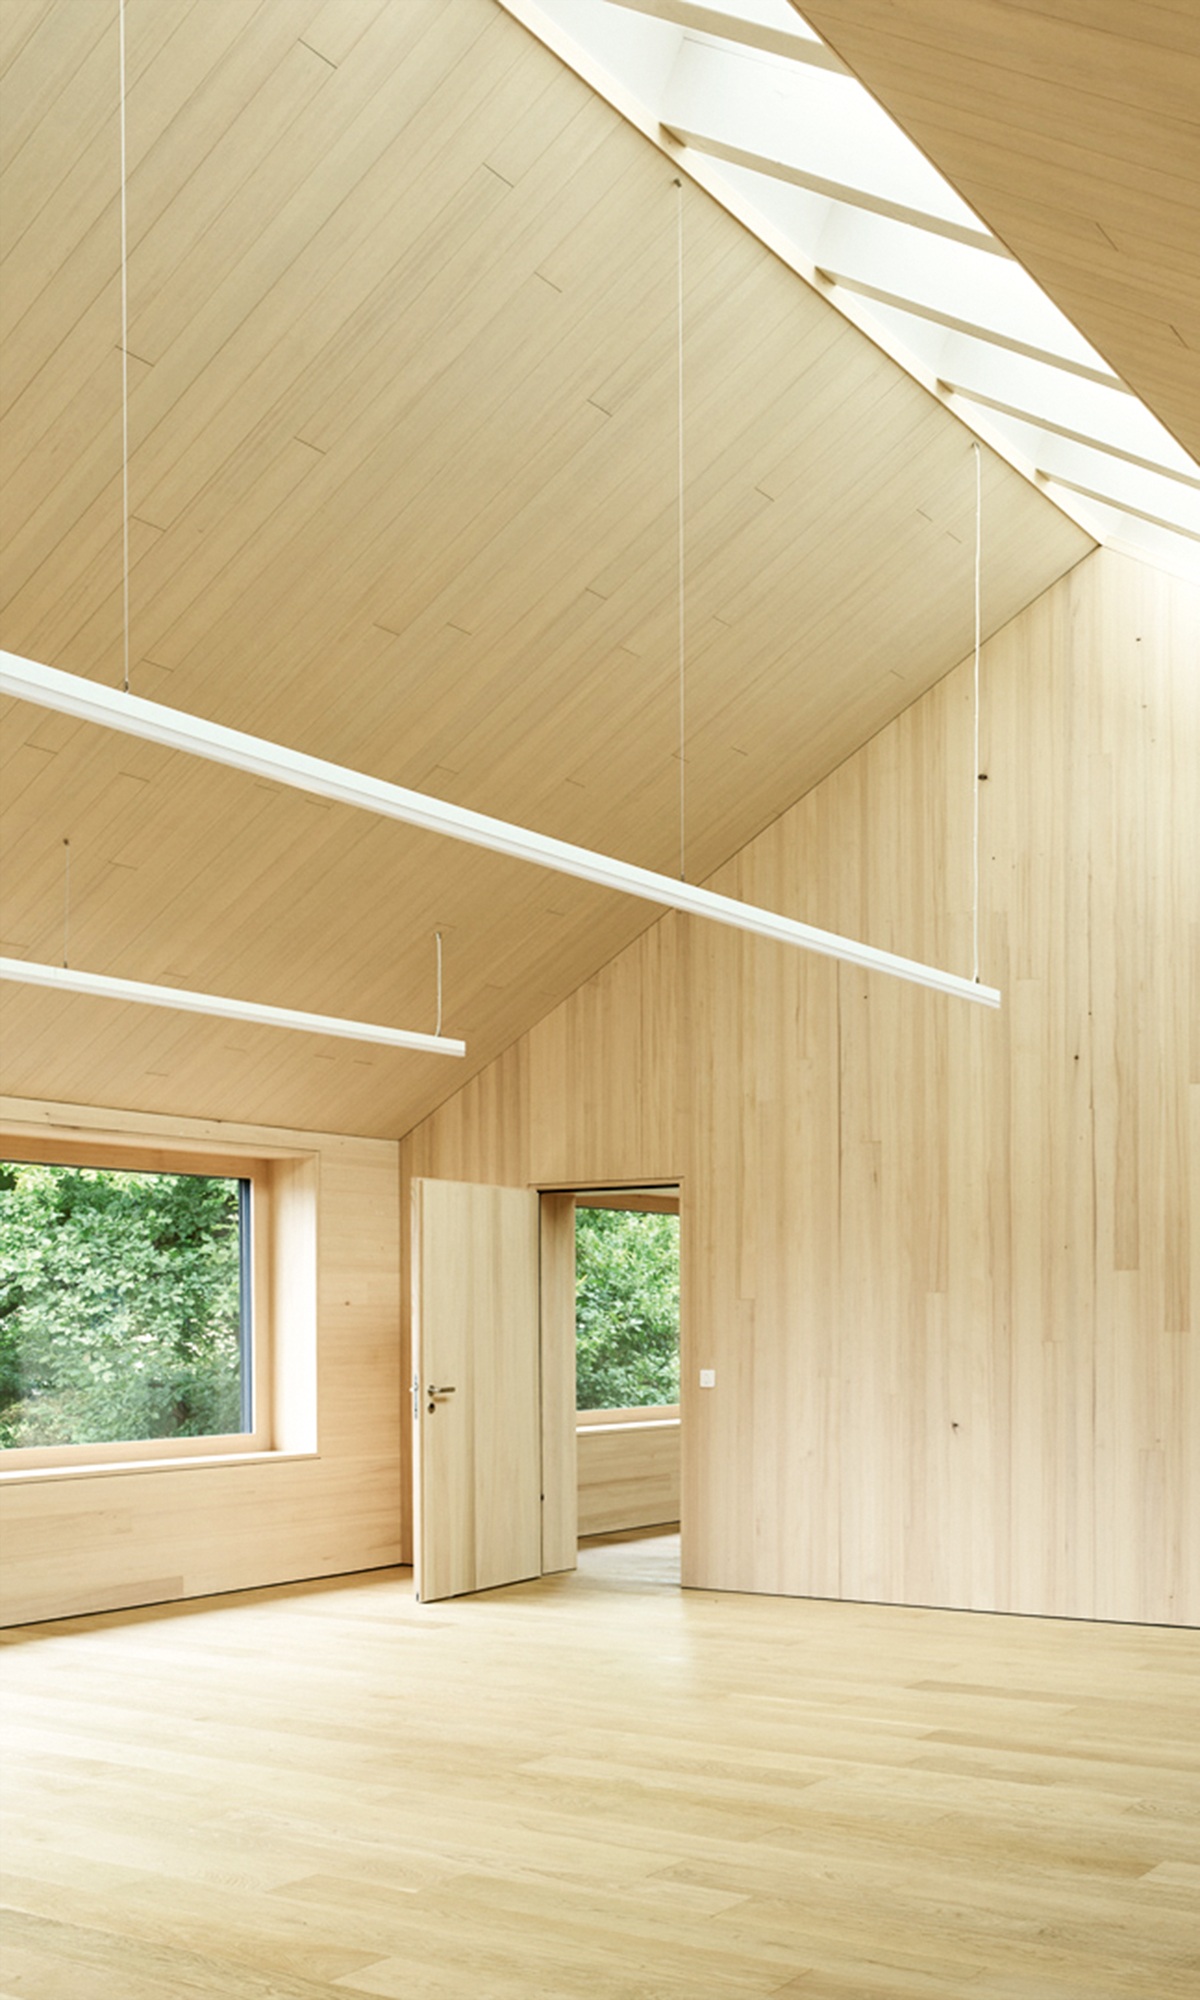 Hoher Raum mit Innenausbau aus Holz und natürlichem Deckenlicht